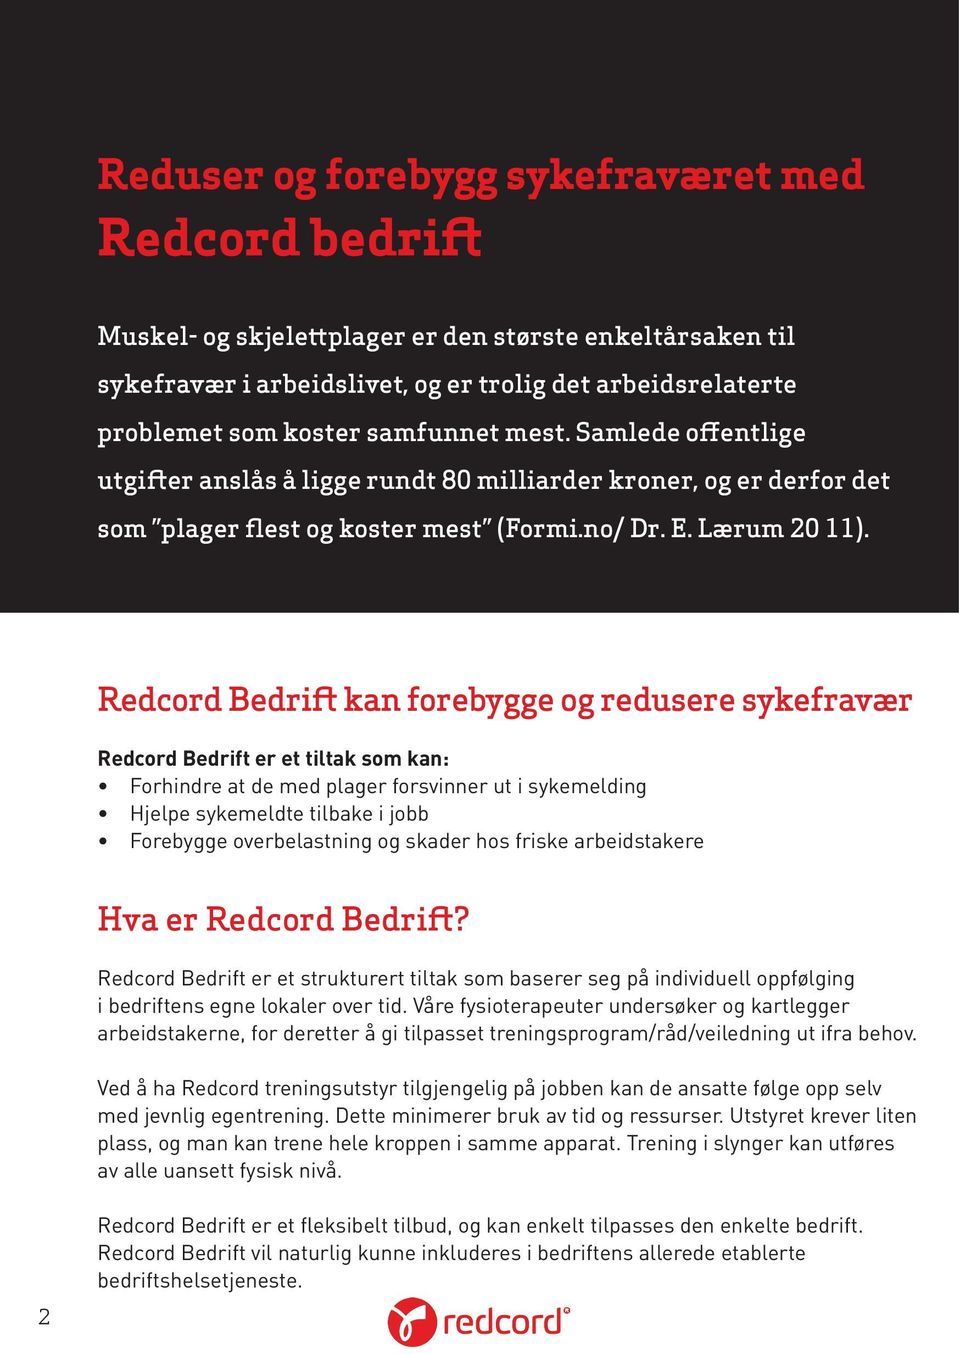 Redcord Bedrift kan forebygge og redusere sykefravær Redcord Bedrift er et tiltak som kan: Forhindre at de med plager forsvinner ut i sykemelding Hjelpe sykemeldte tilbake i jobb Forebygge